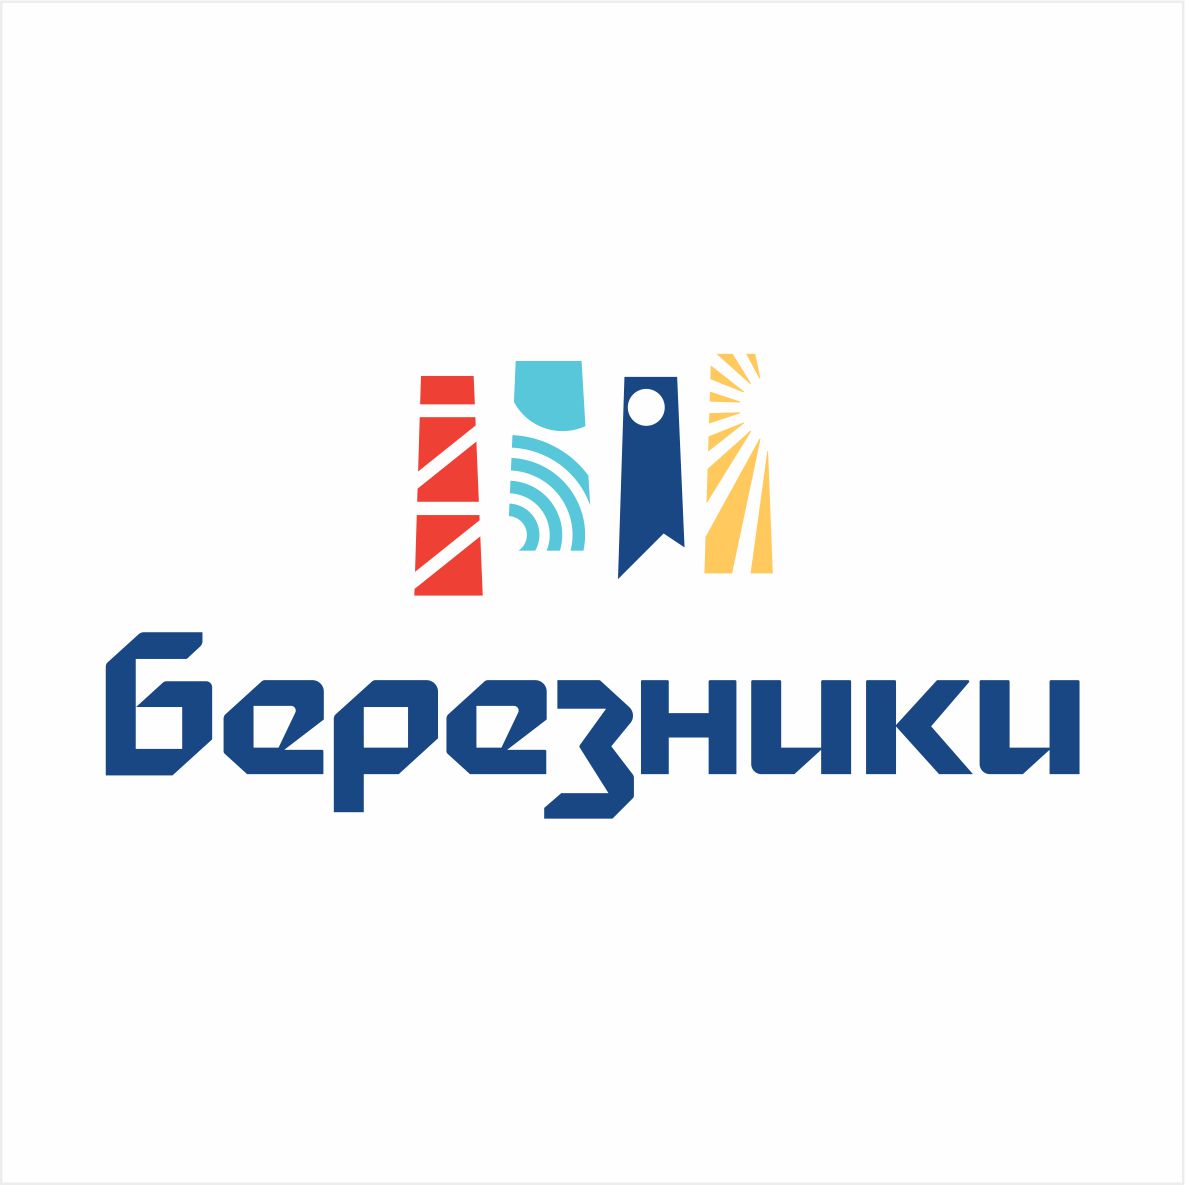 Воспитатель из Березников заняла III место на X Всероссийском конкурсе «Воспитатели России»